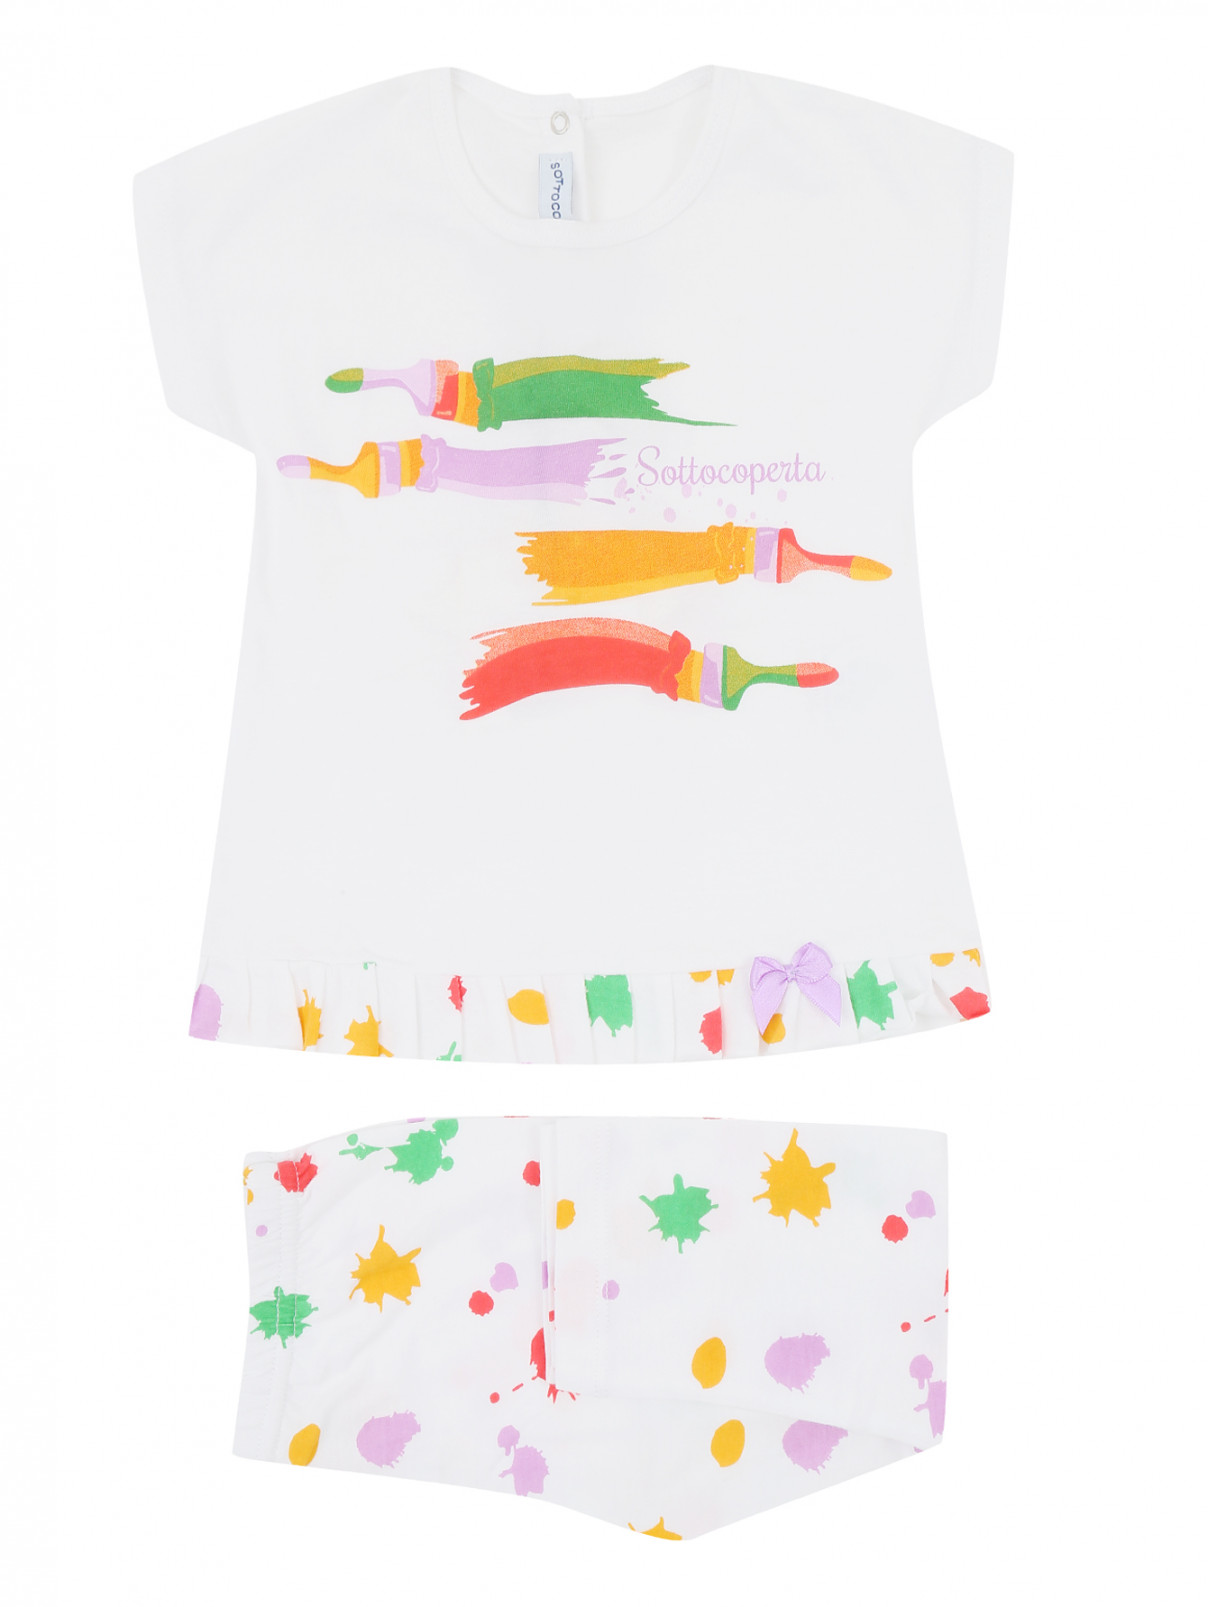 Пижама из хлопка с принтом Picoti&Picota  –  Общий вид  – Цвет:  Мультиколор